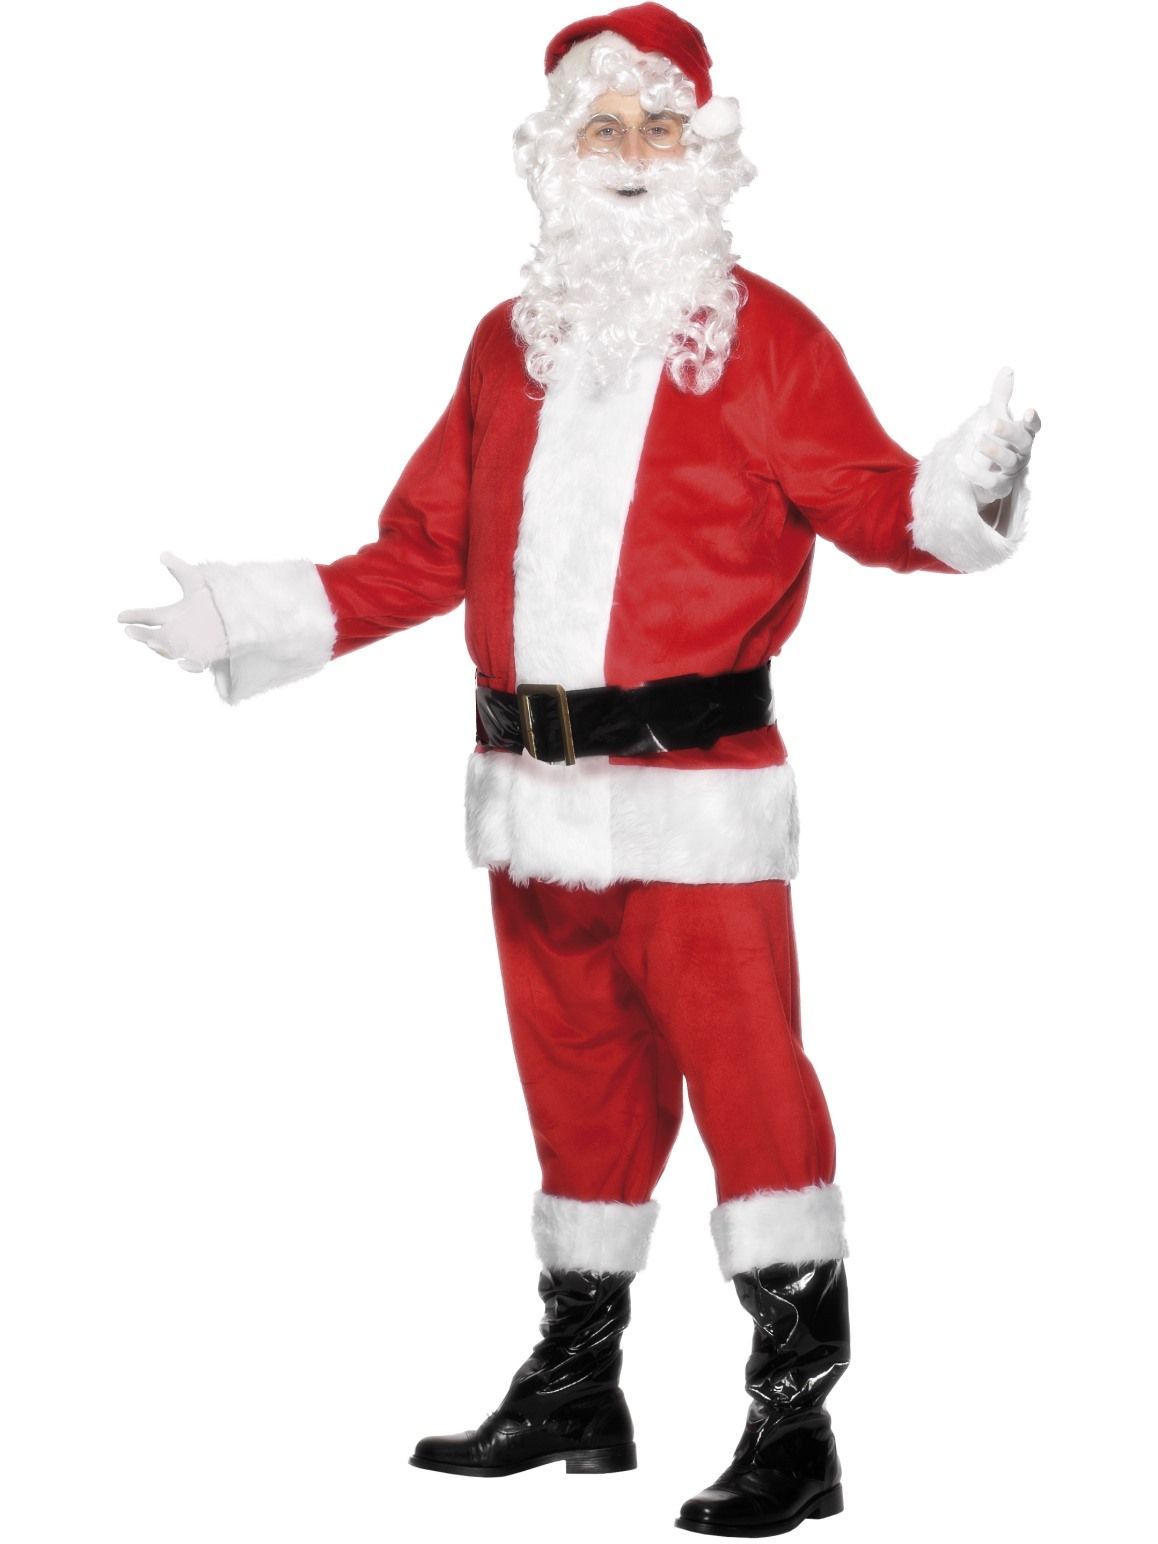 Costume Adult Santa Suit Premium Plush XLarge